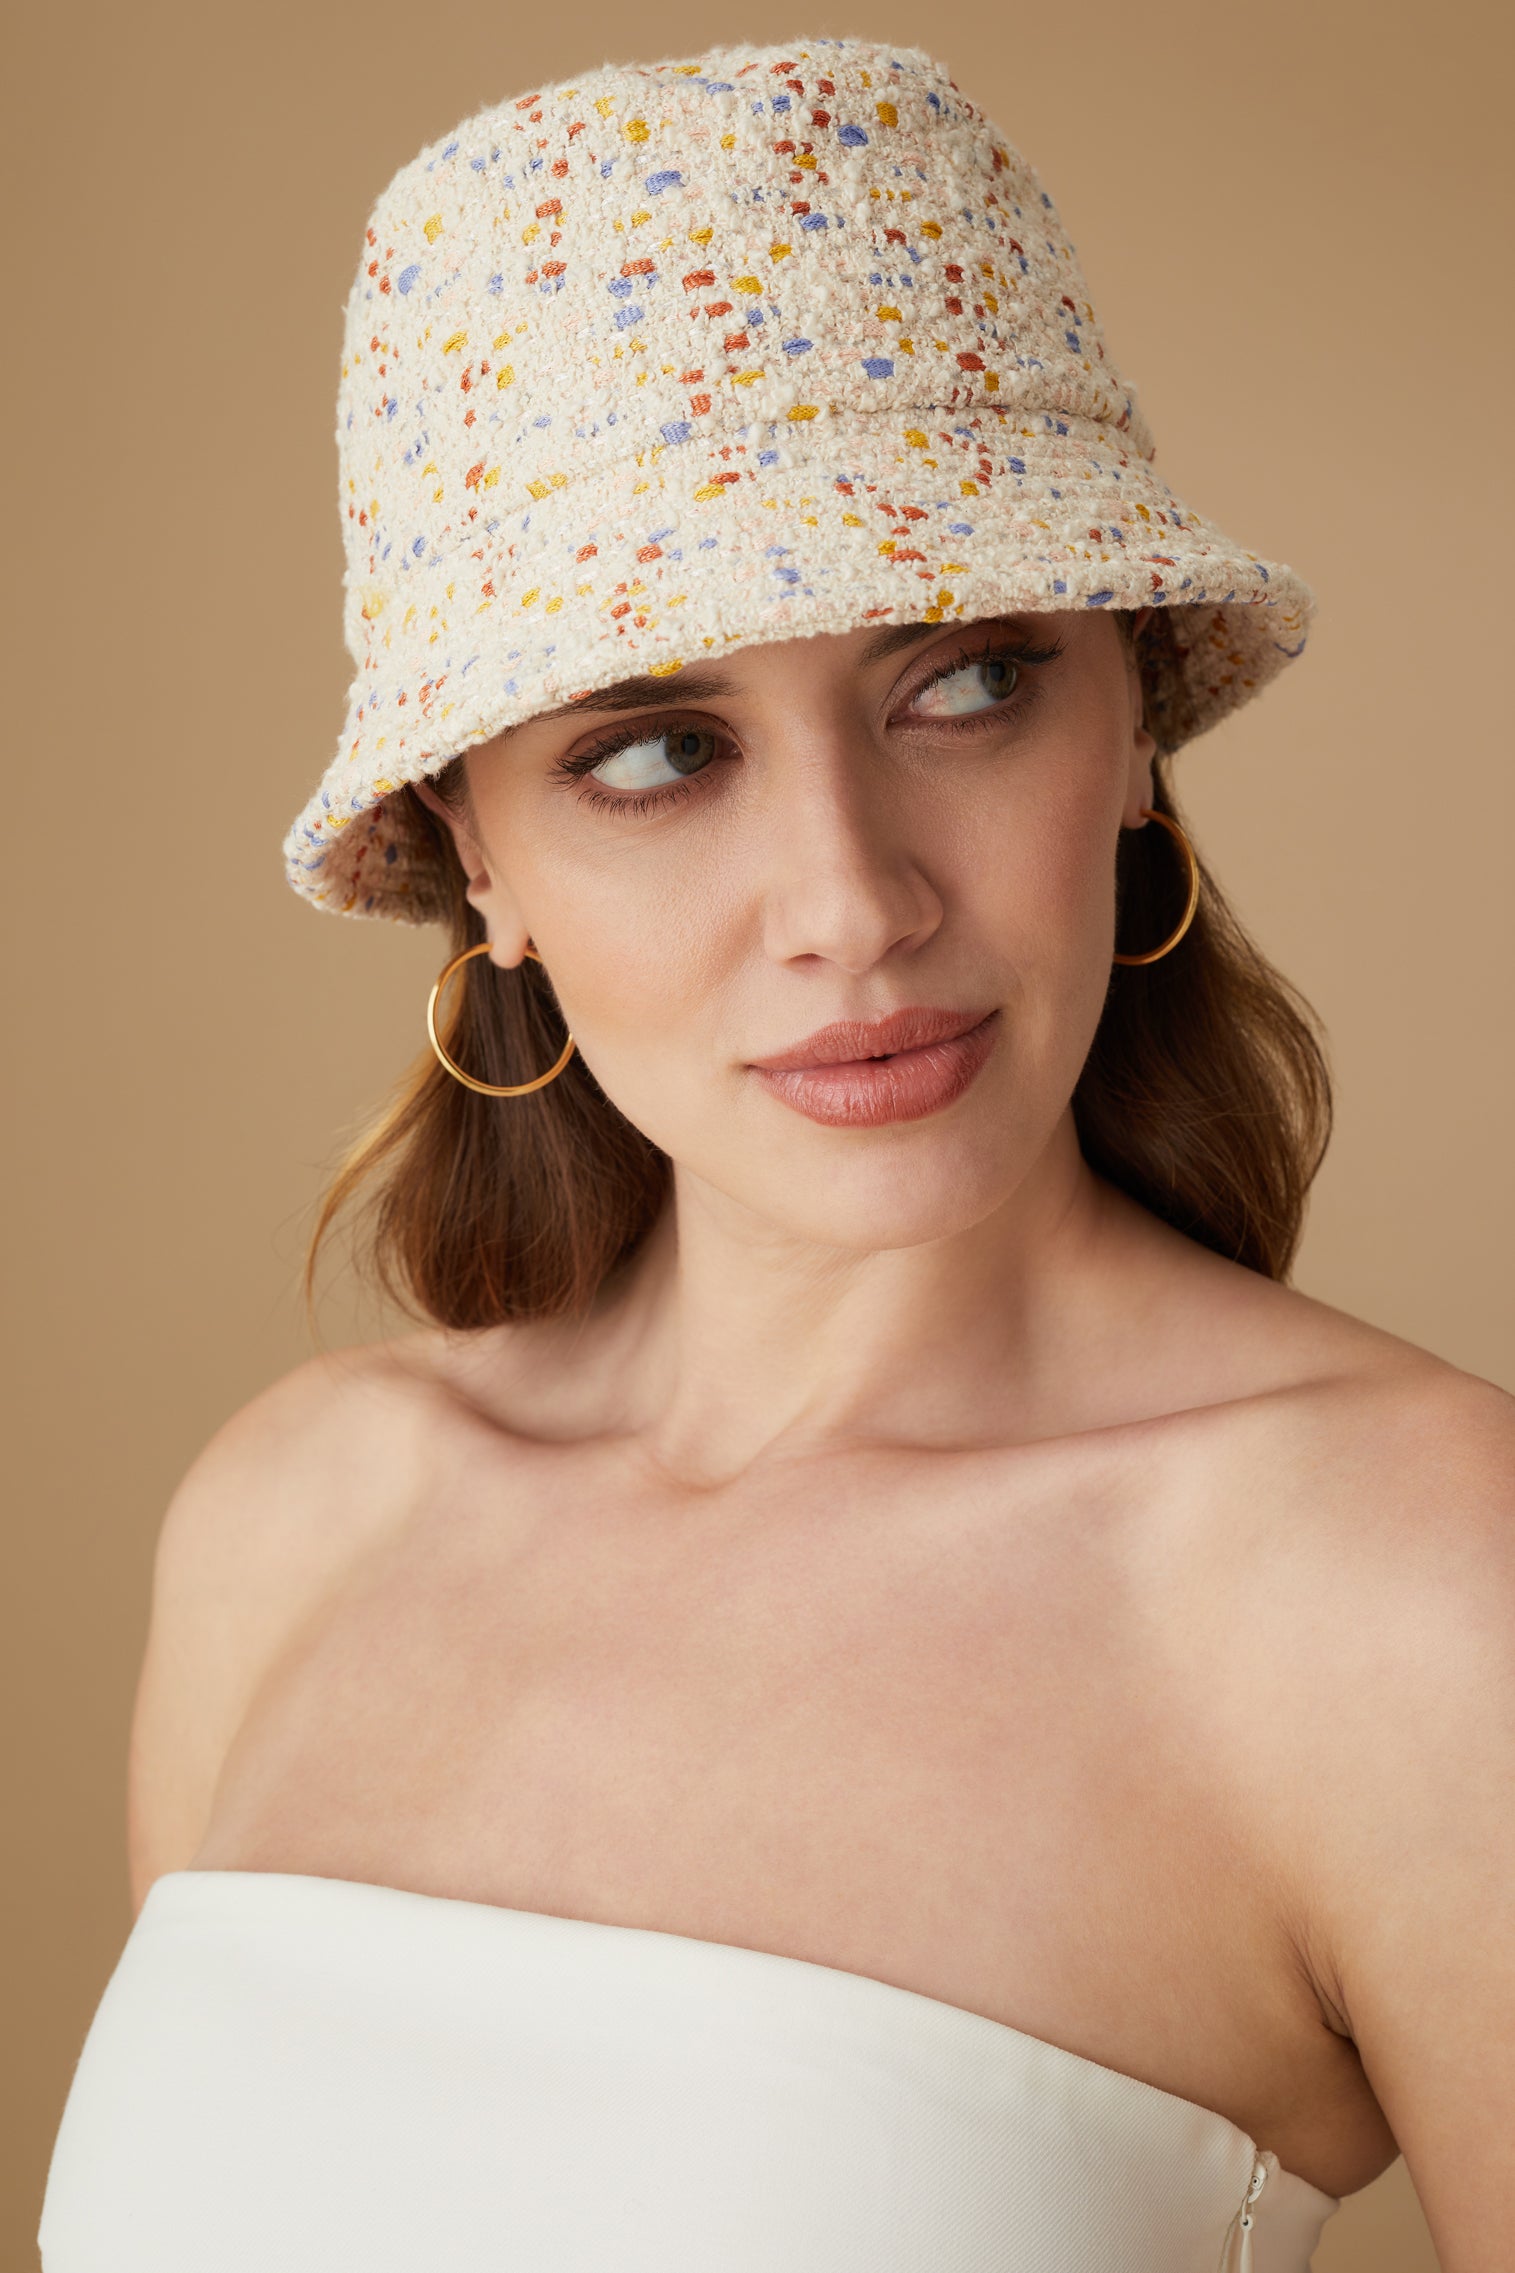 Rye Speckled Bucket Hat - New Season Women's Hats - Lock & Co. Hatters London UK